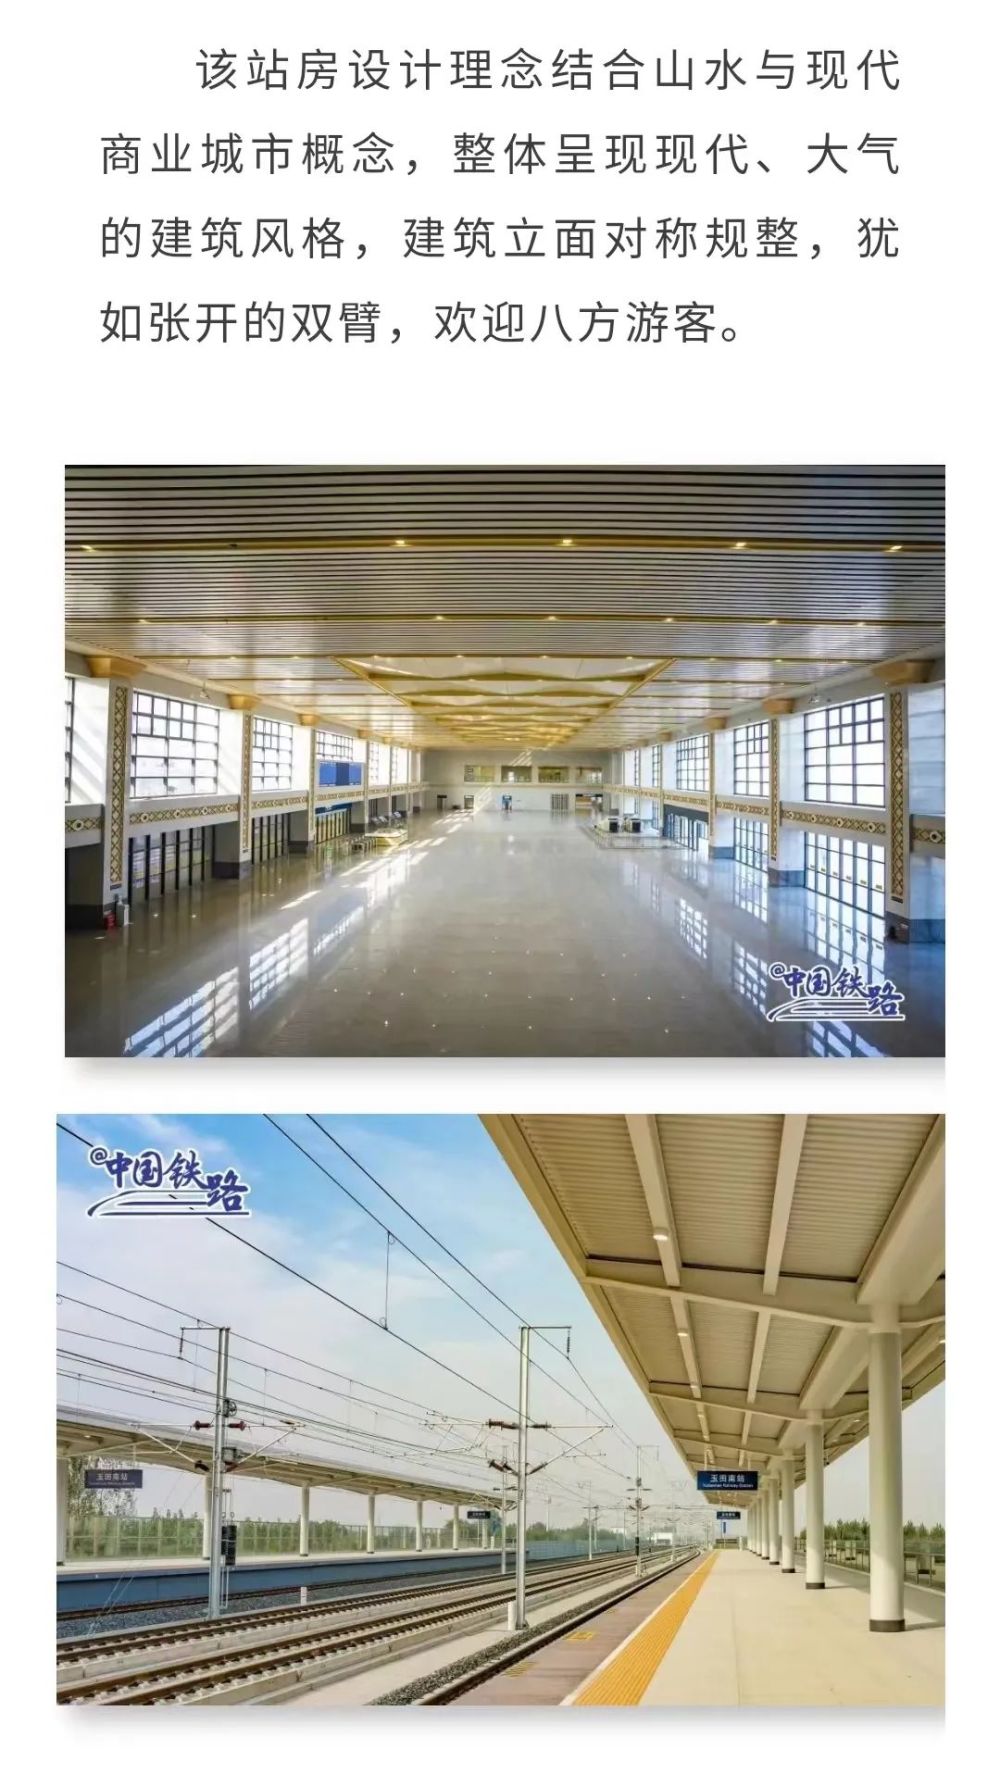 开通倒计时！京唐城际铁路五座新建高铁站集体亮相西安英孚和芝麻街英语哪个好